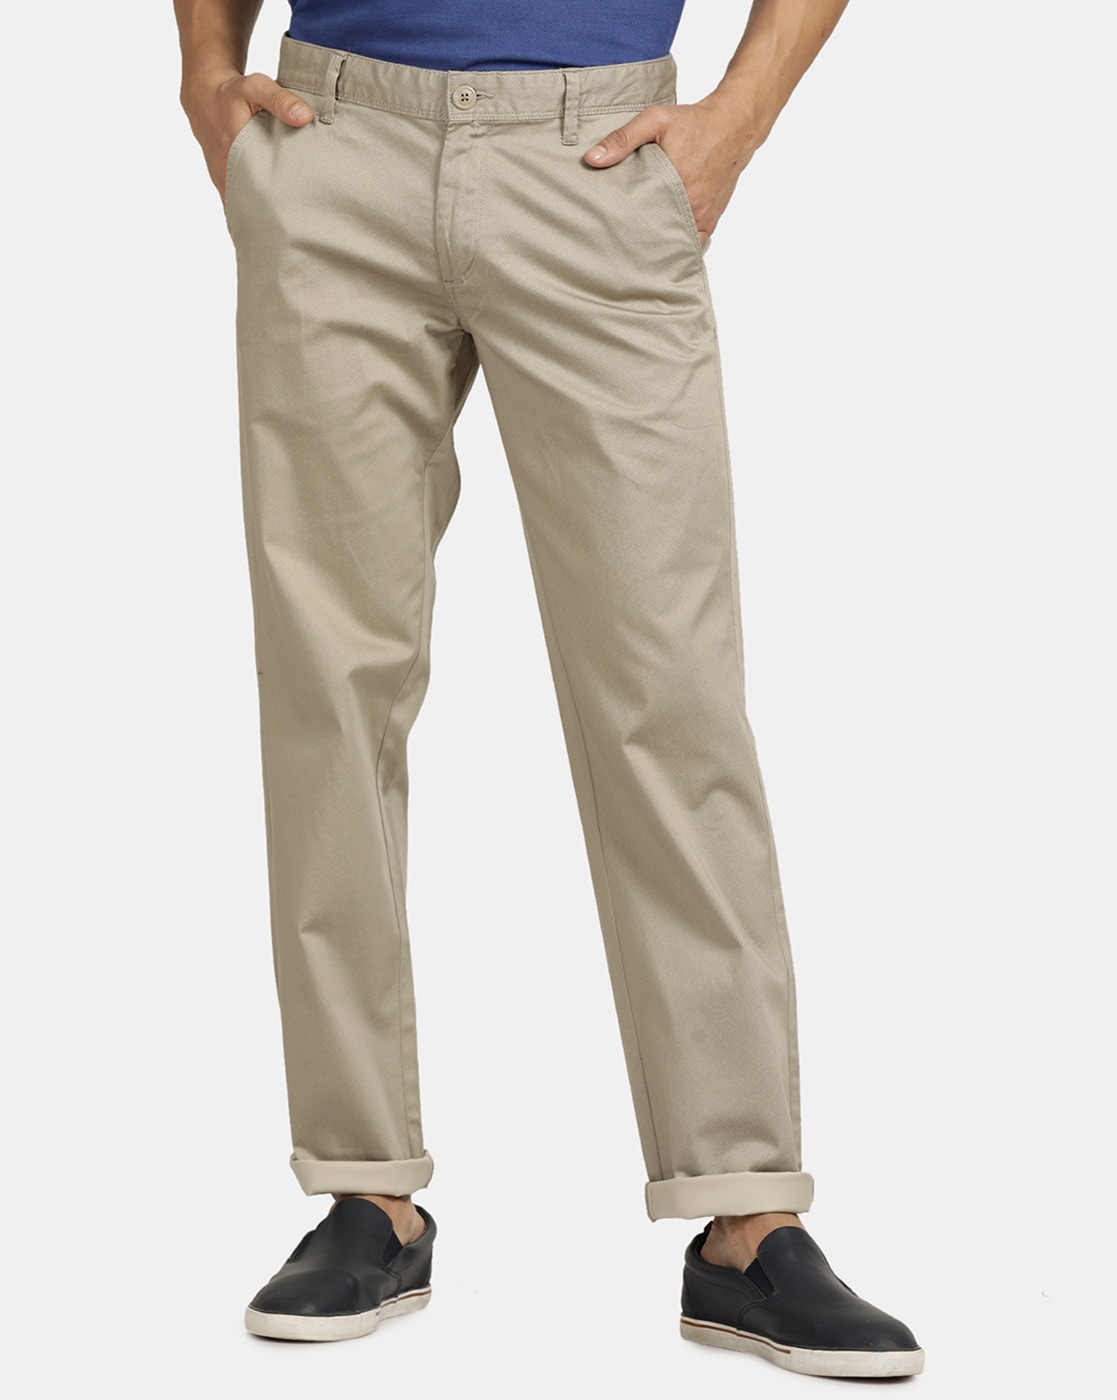 Buy Oyster Beige Trousers  Pants for Men by TBase Online  Ajiocom